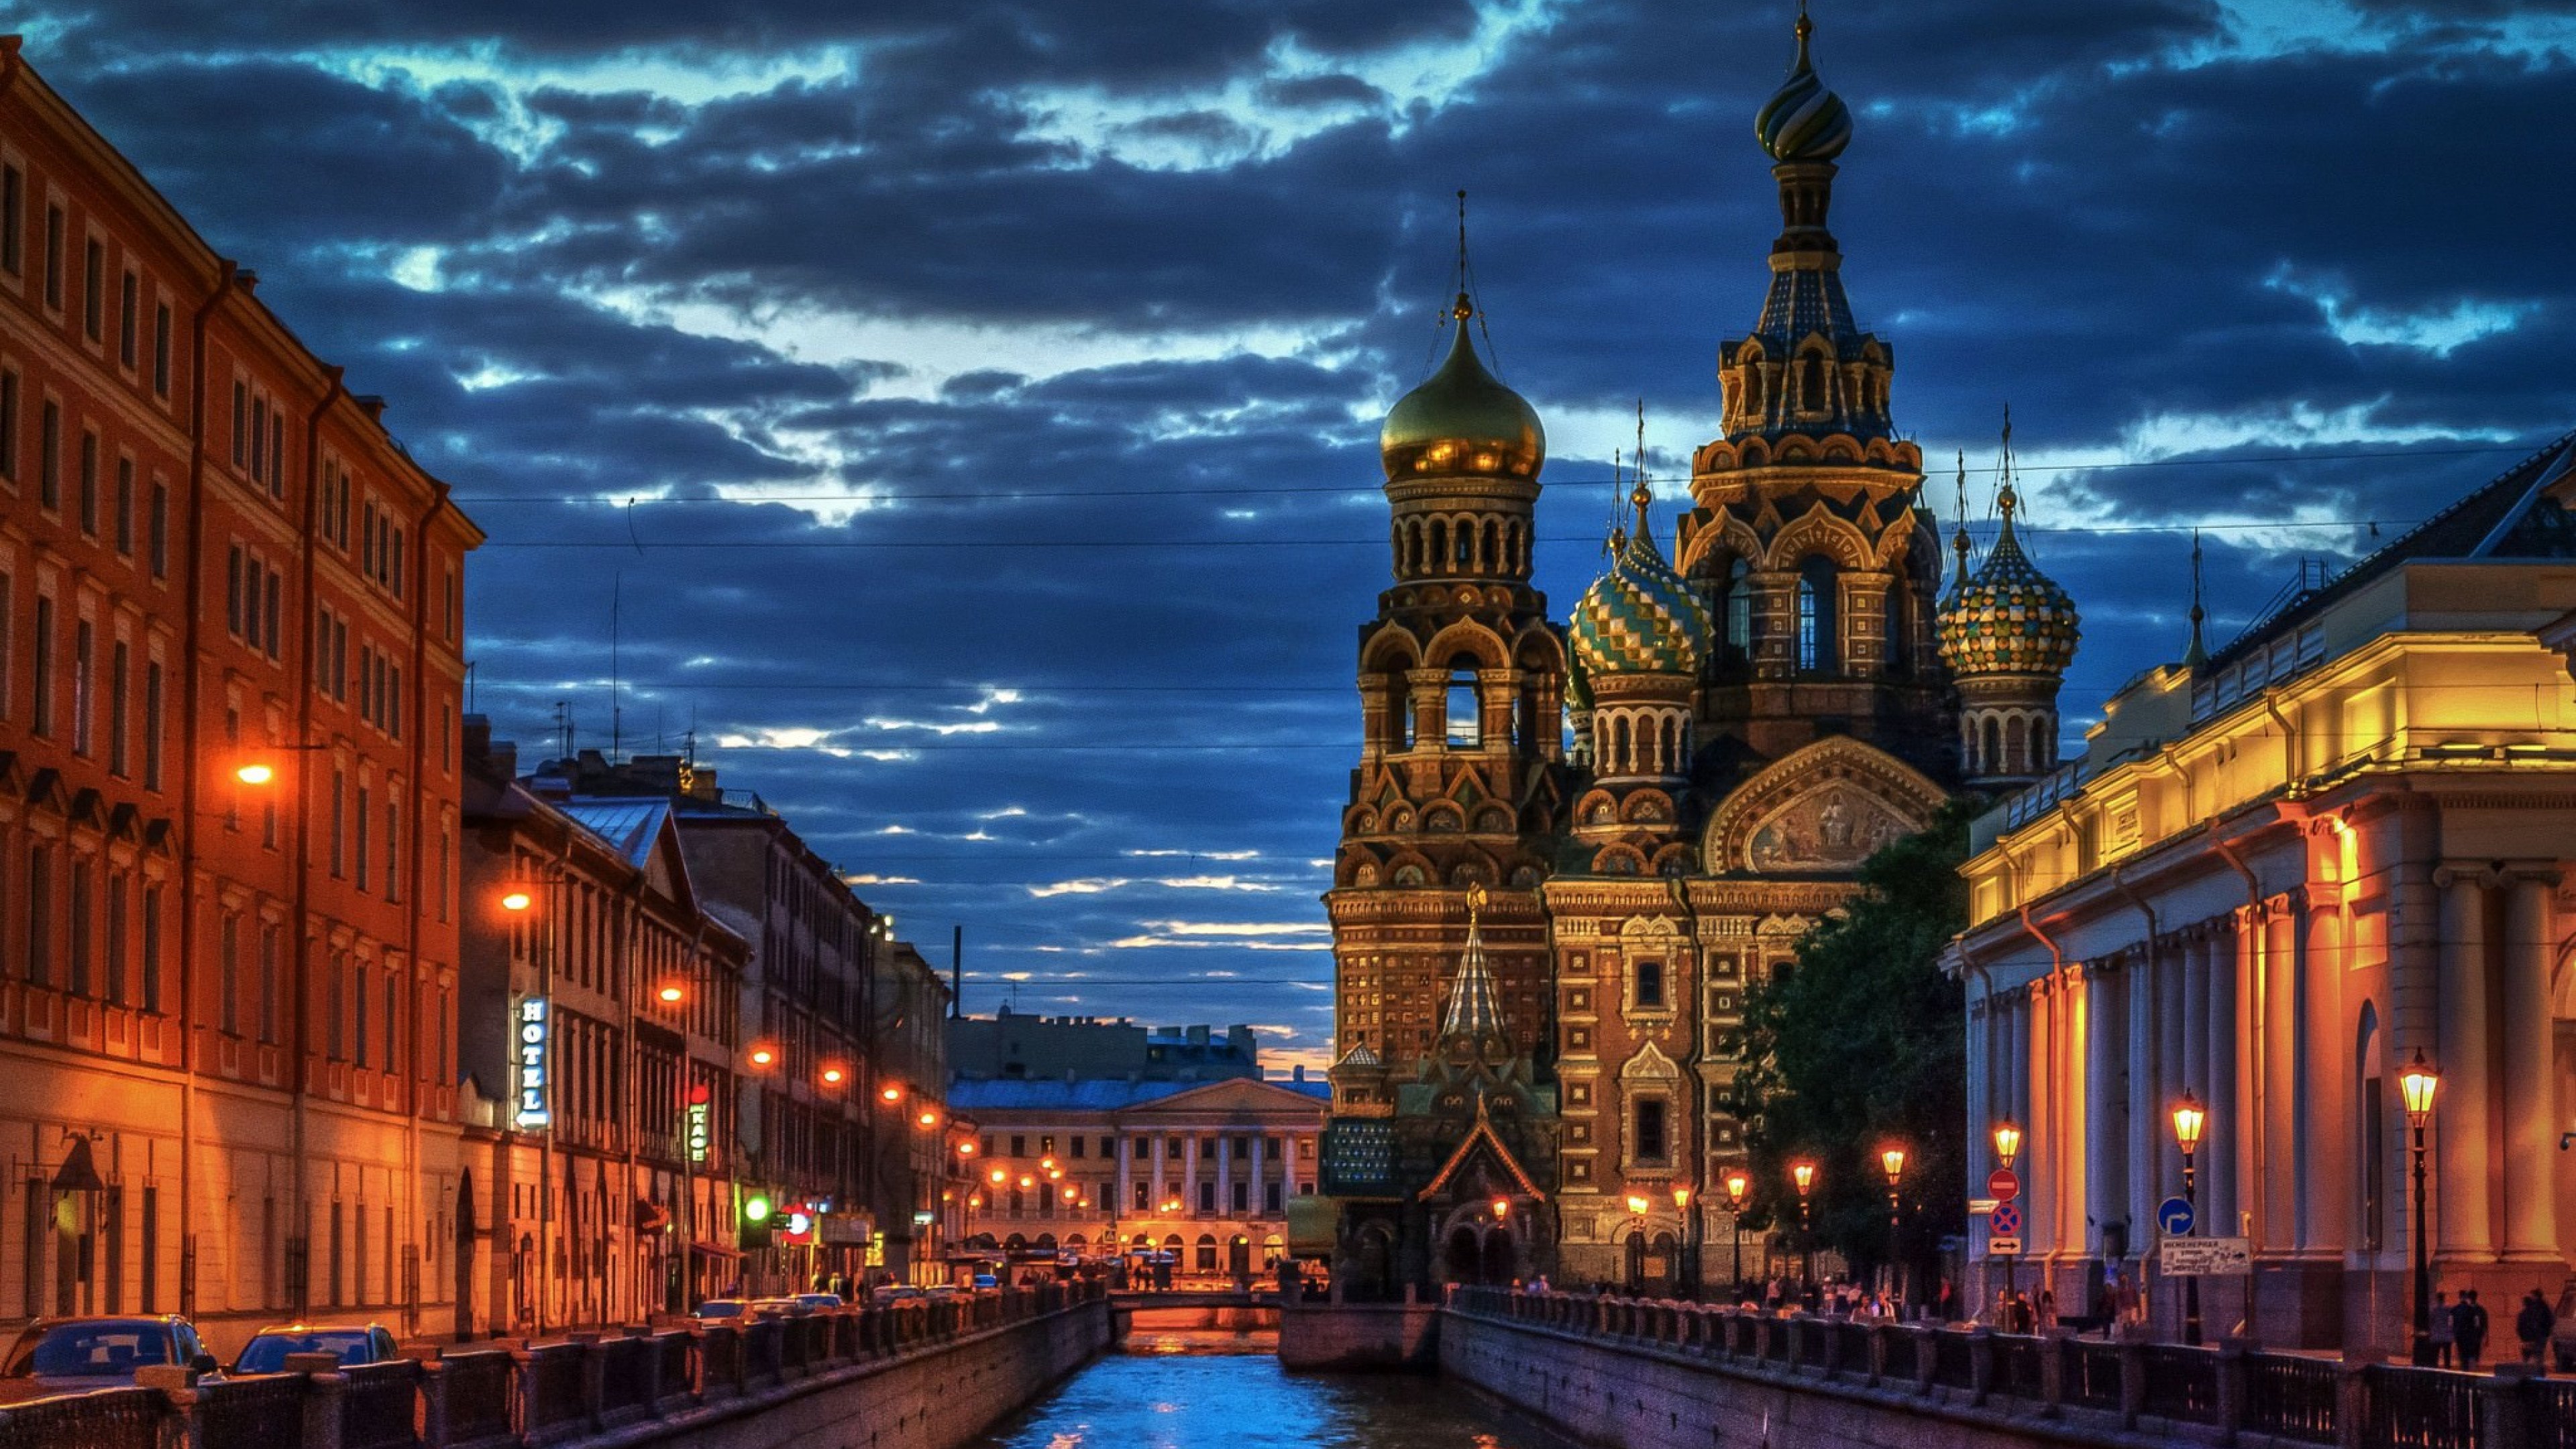 My hometown, Saint Petersburg